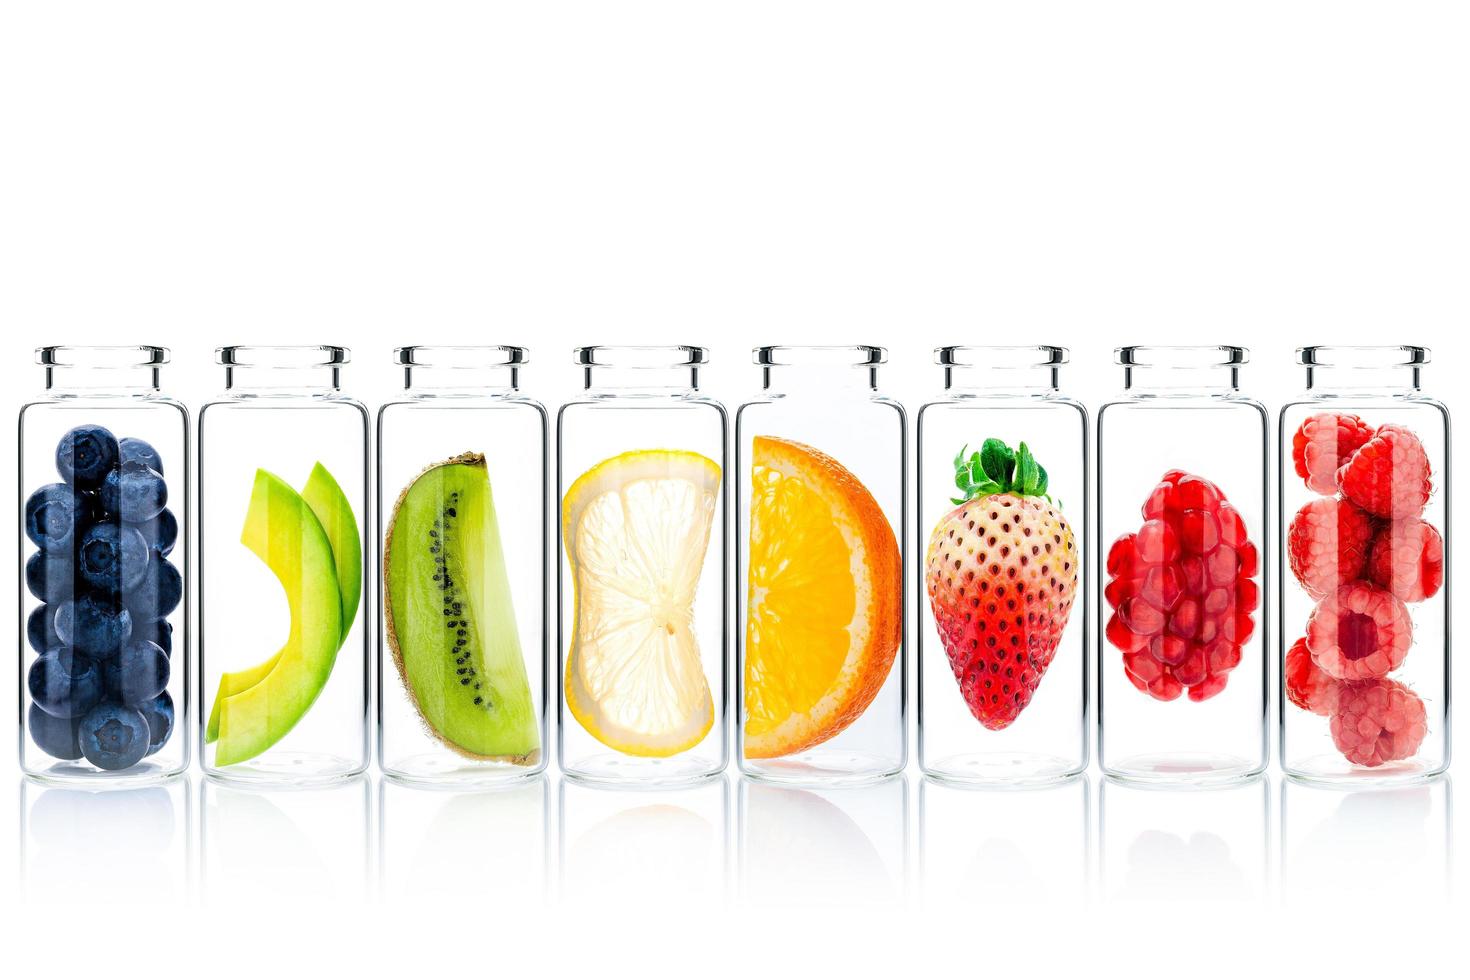 hausgemachte Hautpflege mit Fruchtbestandteilen von Avocado, Orange, Blaubeere, Granatapfel, Erdbeere und Himbeere in Glasflaschen lokalisiert auf weißem Hintergrund foto